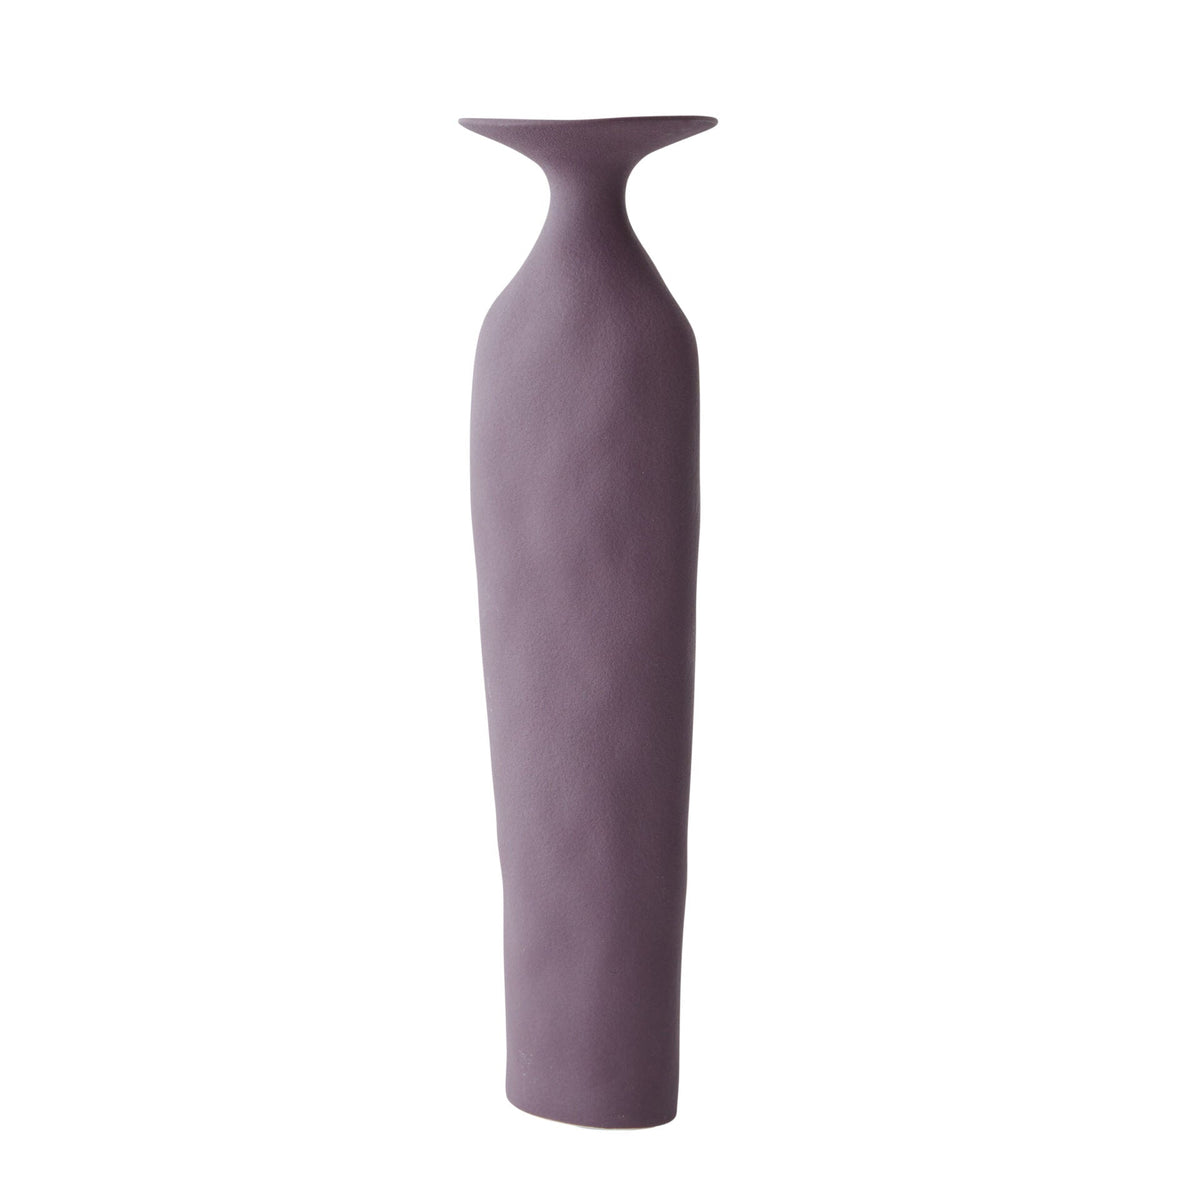 Alice Ceramic Vase in Mulberry - 28cm